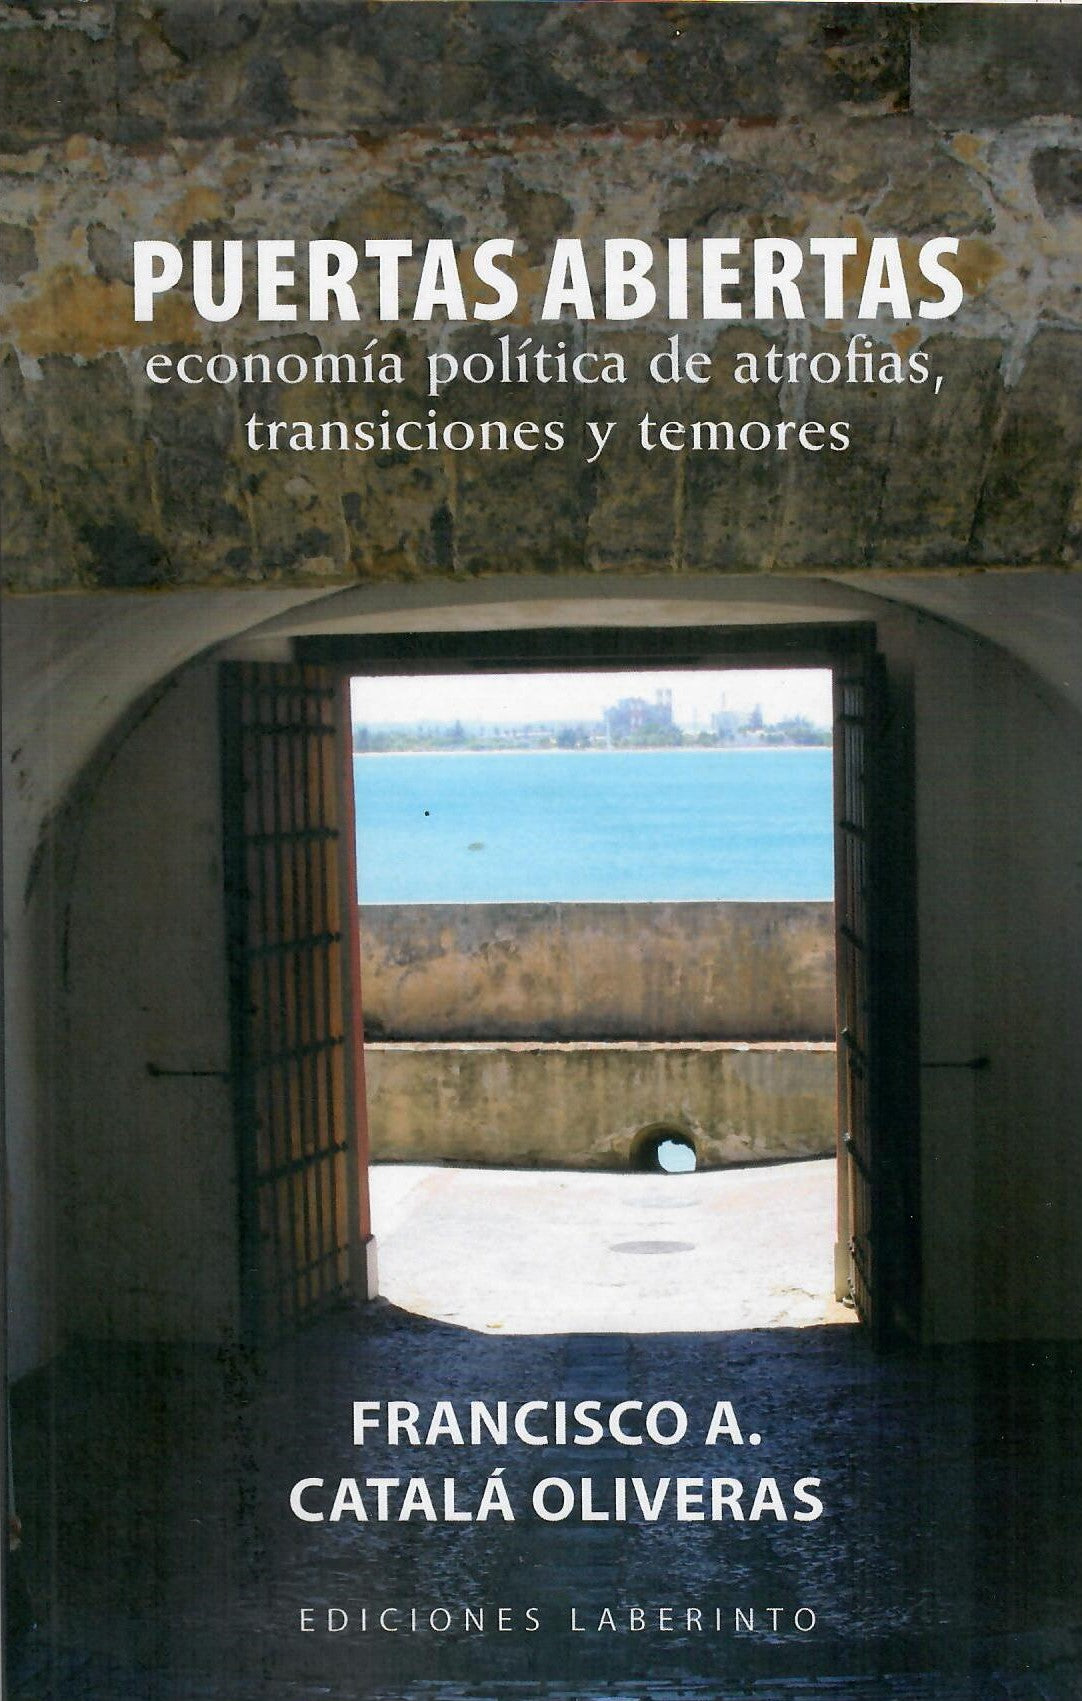 Puertas abiertas: economía política de atrofias, transiciones y temores